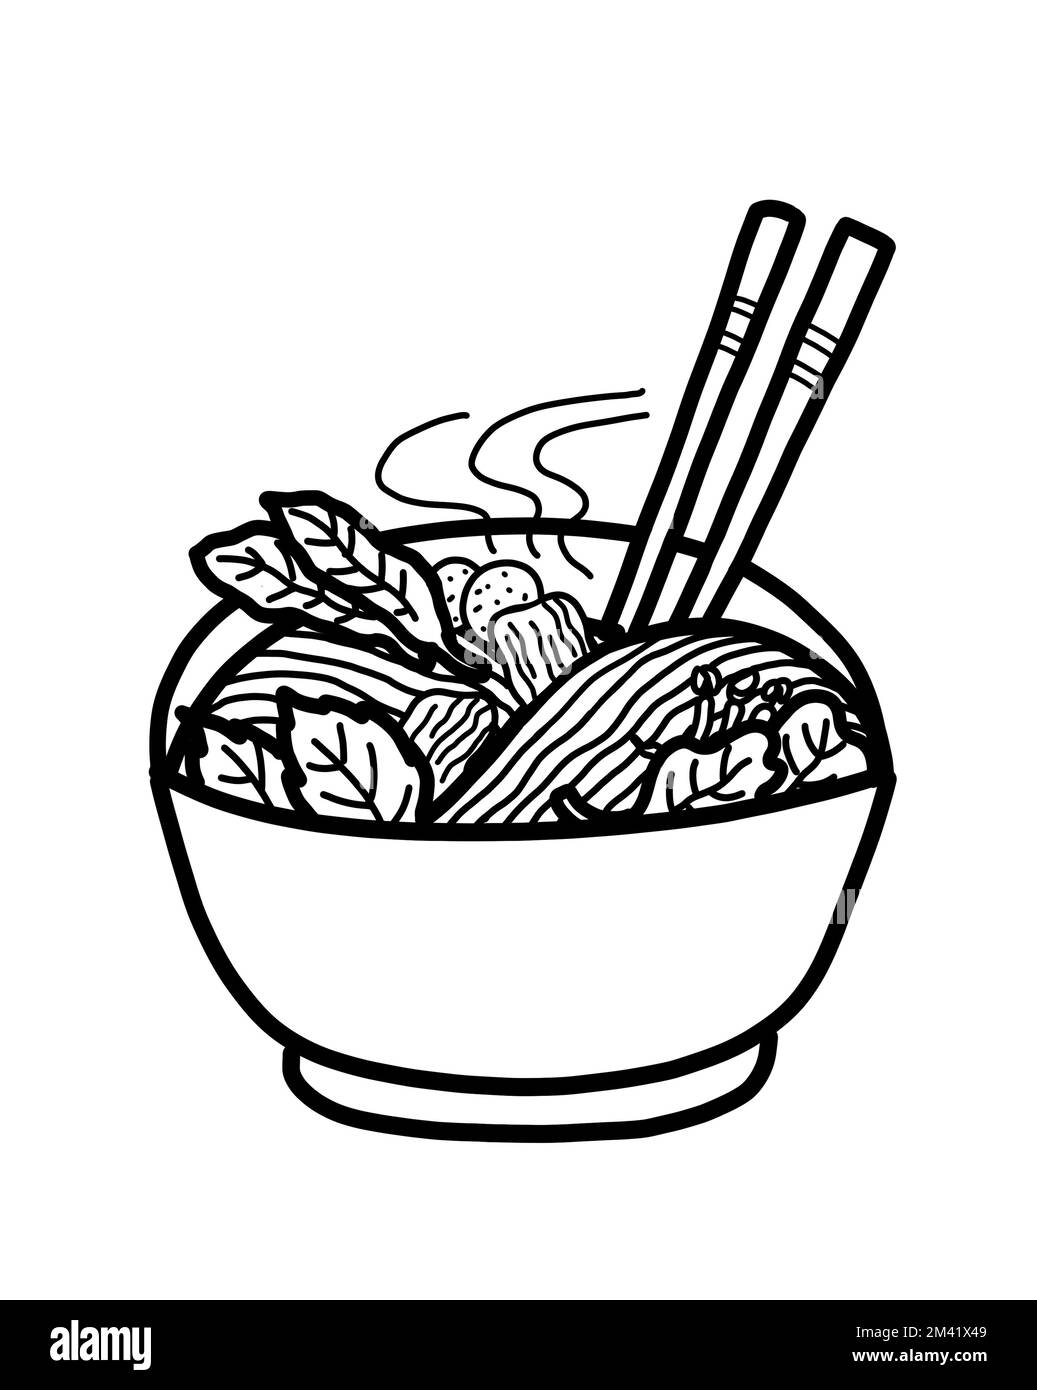 Sopa de fideos amarillos al estilo tailandés o vietnamita con carne y verduras en un tazón. Concepto de cocina de comida asiática saludable. Dibujo de línea en blanco y negro. Foto de stock